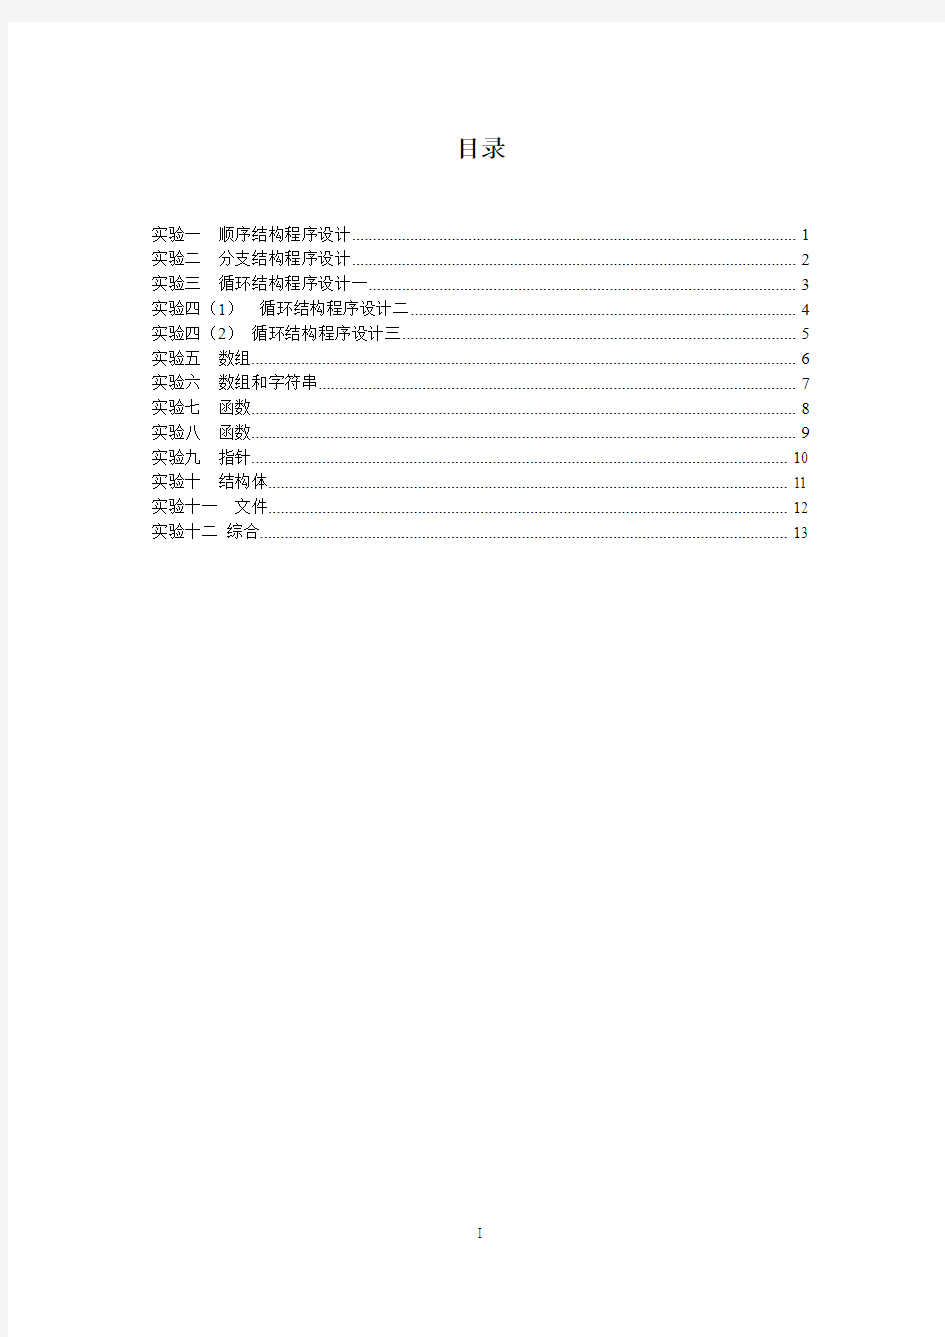 上海应用技术学院程序设计语言实验指导书(2015年)